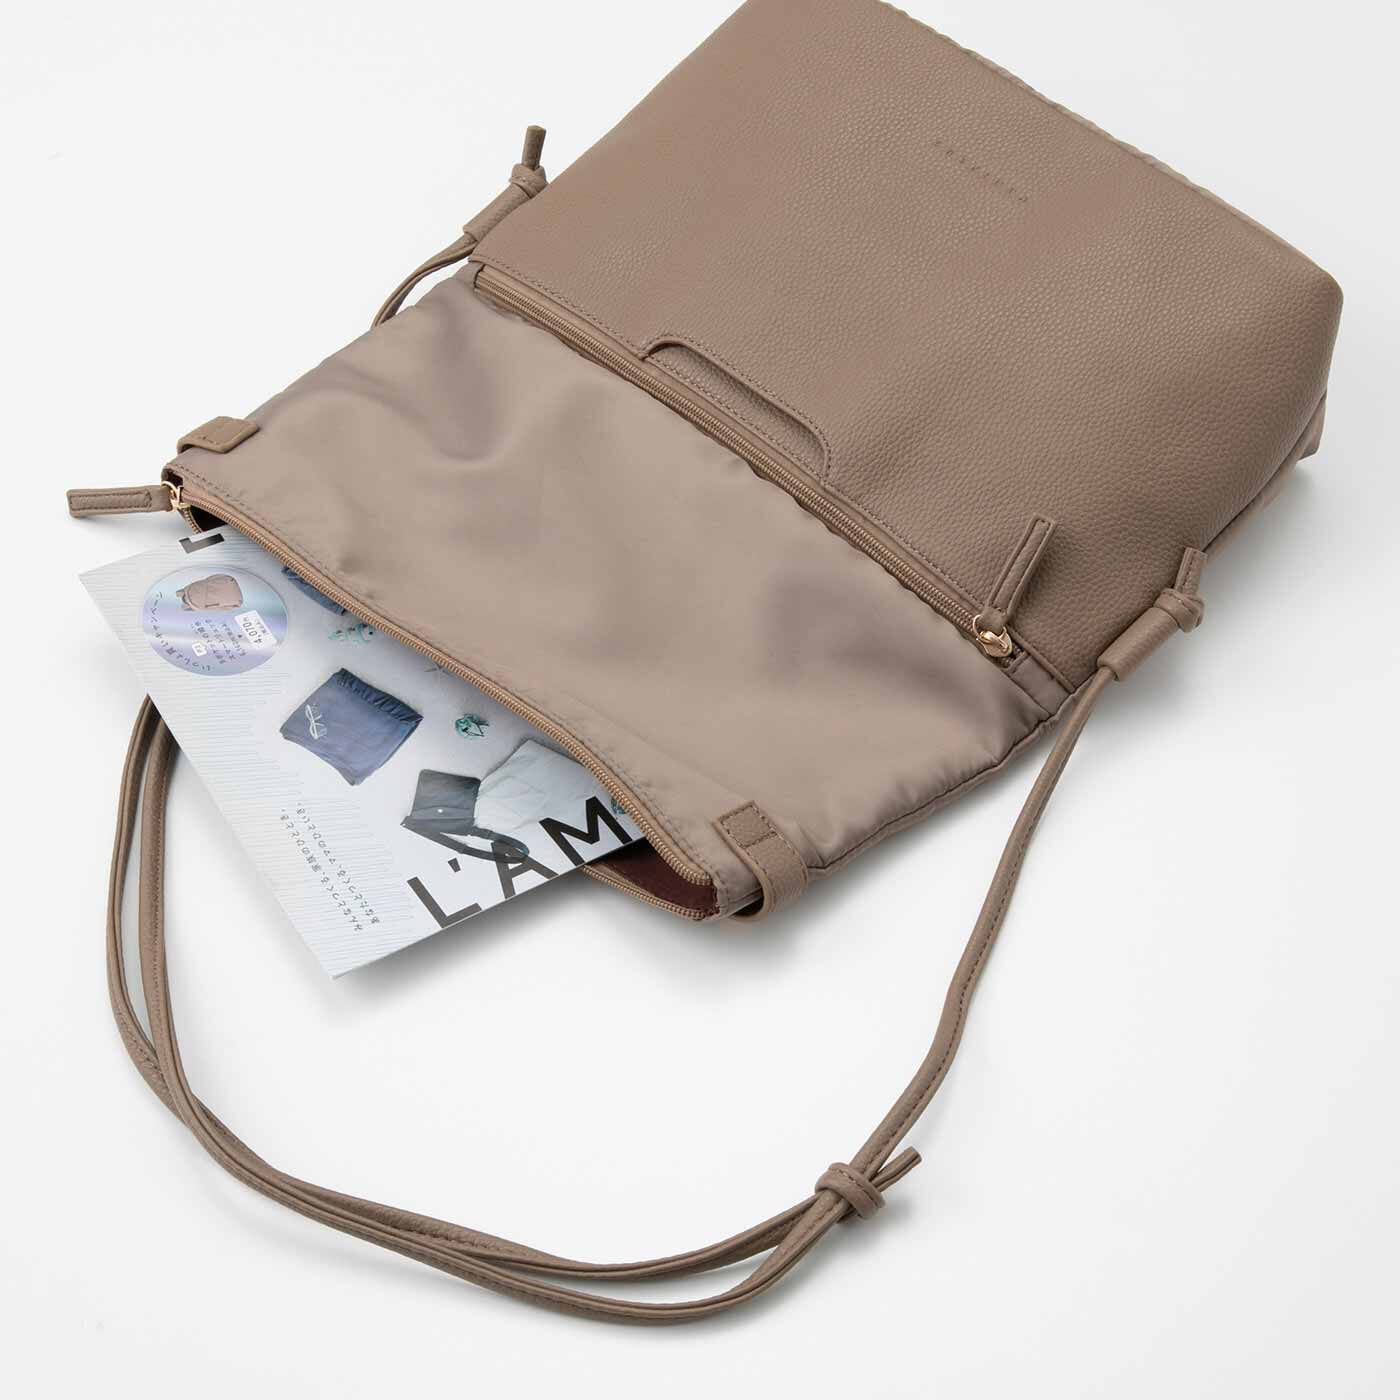 Real Stock|ラミプリュス　A4サイズが入るバッグに変身 パタパタ折り返しポケットが便利なショルダーバッグ|“A4使い”の際はすっぽりとA4サイズが収まります。